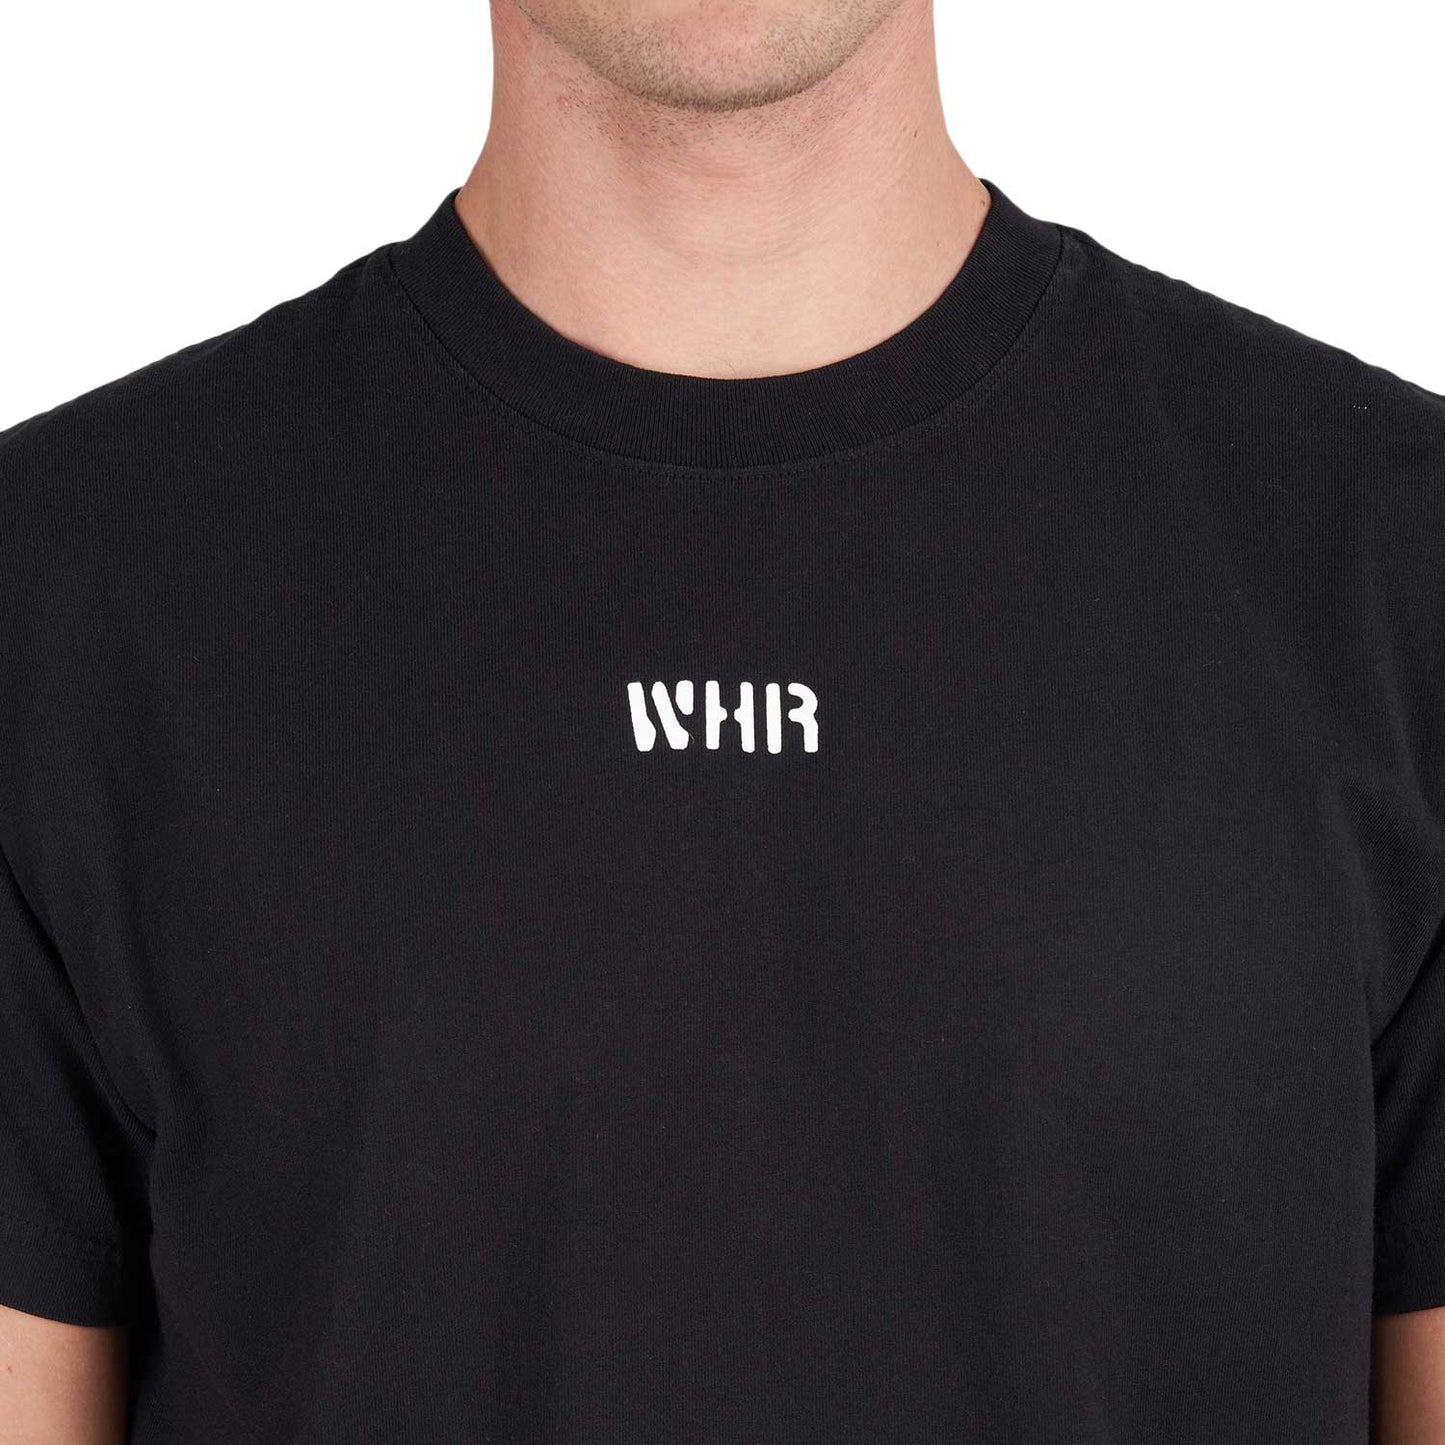 Western Hydrodynamic Research Anchor T-Shirt (Black)